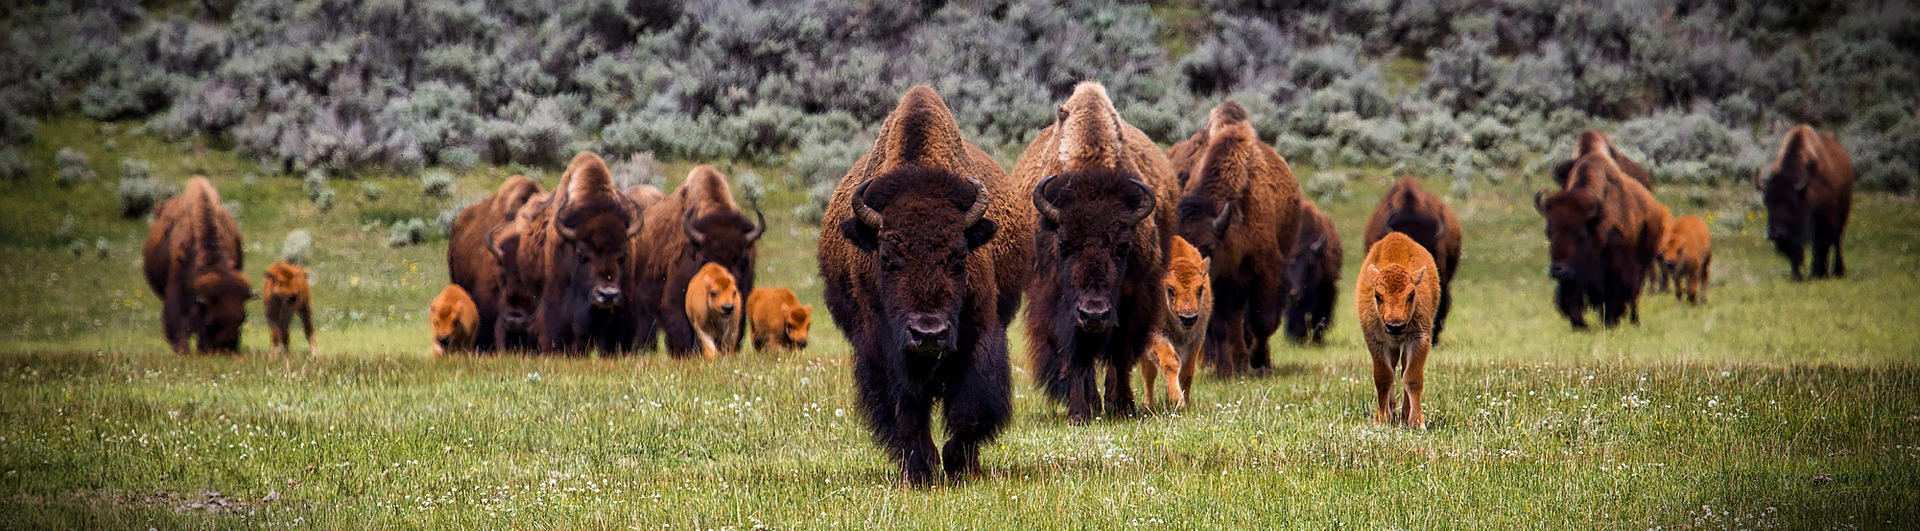 Polish bisons